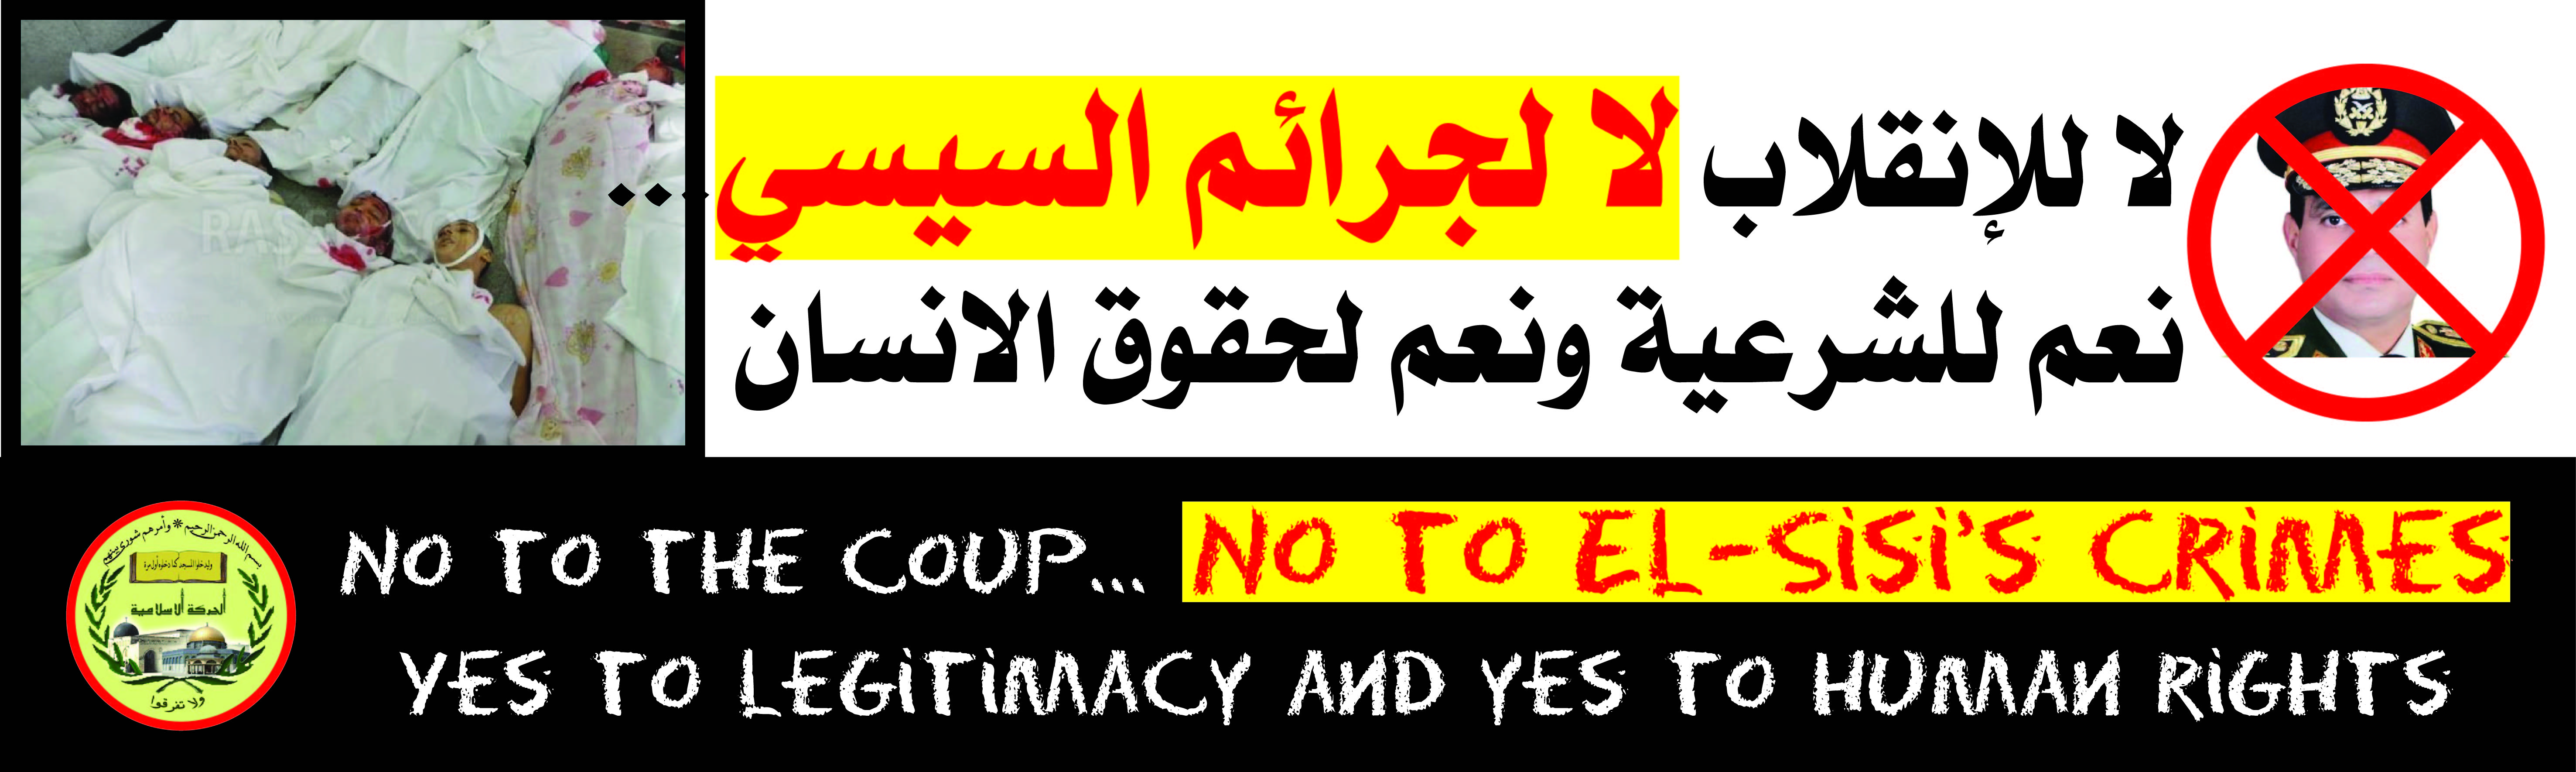 دعوة للمظاهرة ضد جرائم السيسي امام السفارة المصرية في تل ابيب اليوم الساعة الخامسة عصرا.